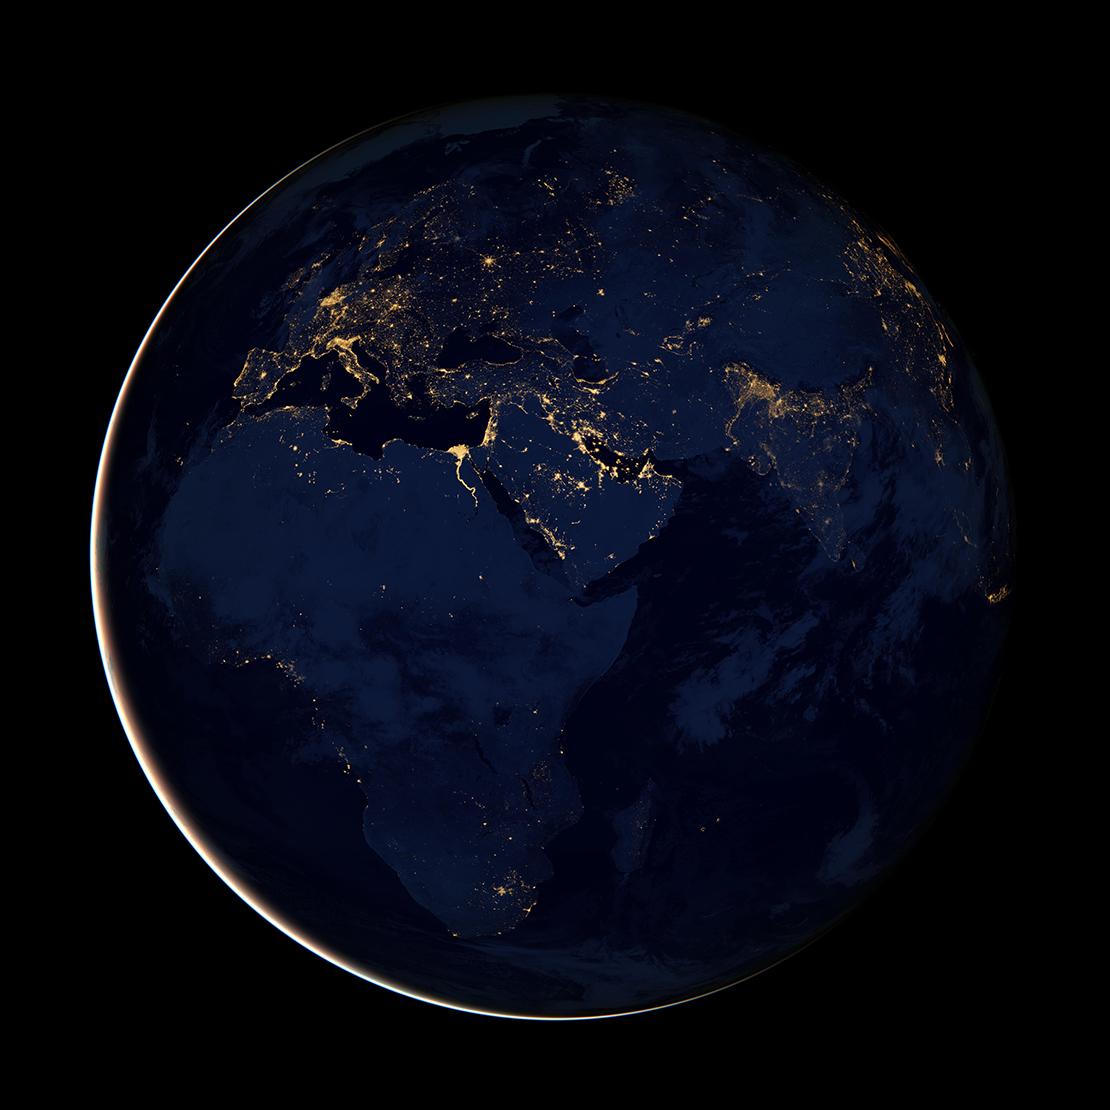 Europa, Afrika und der mittlere Osten bei Nacht vom Weltall aus gesehen.